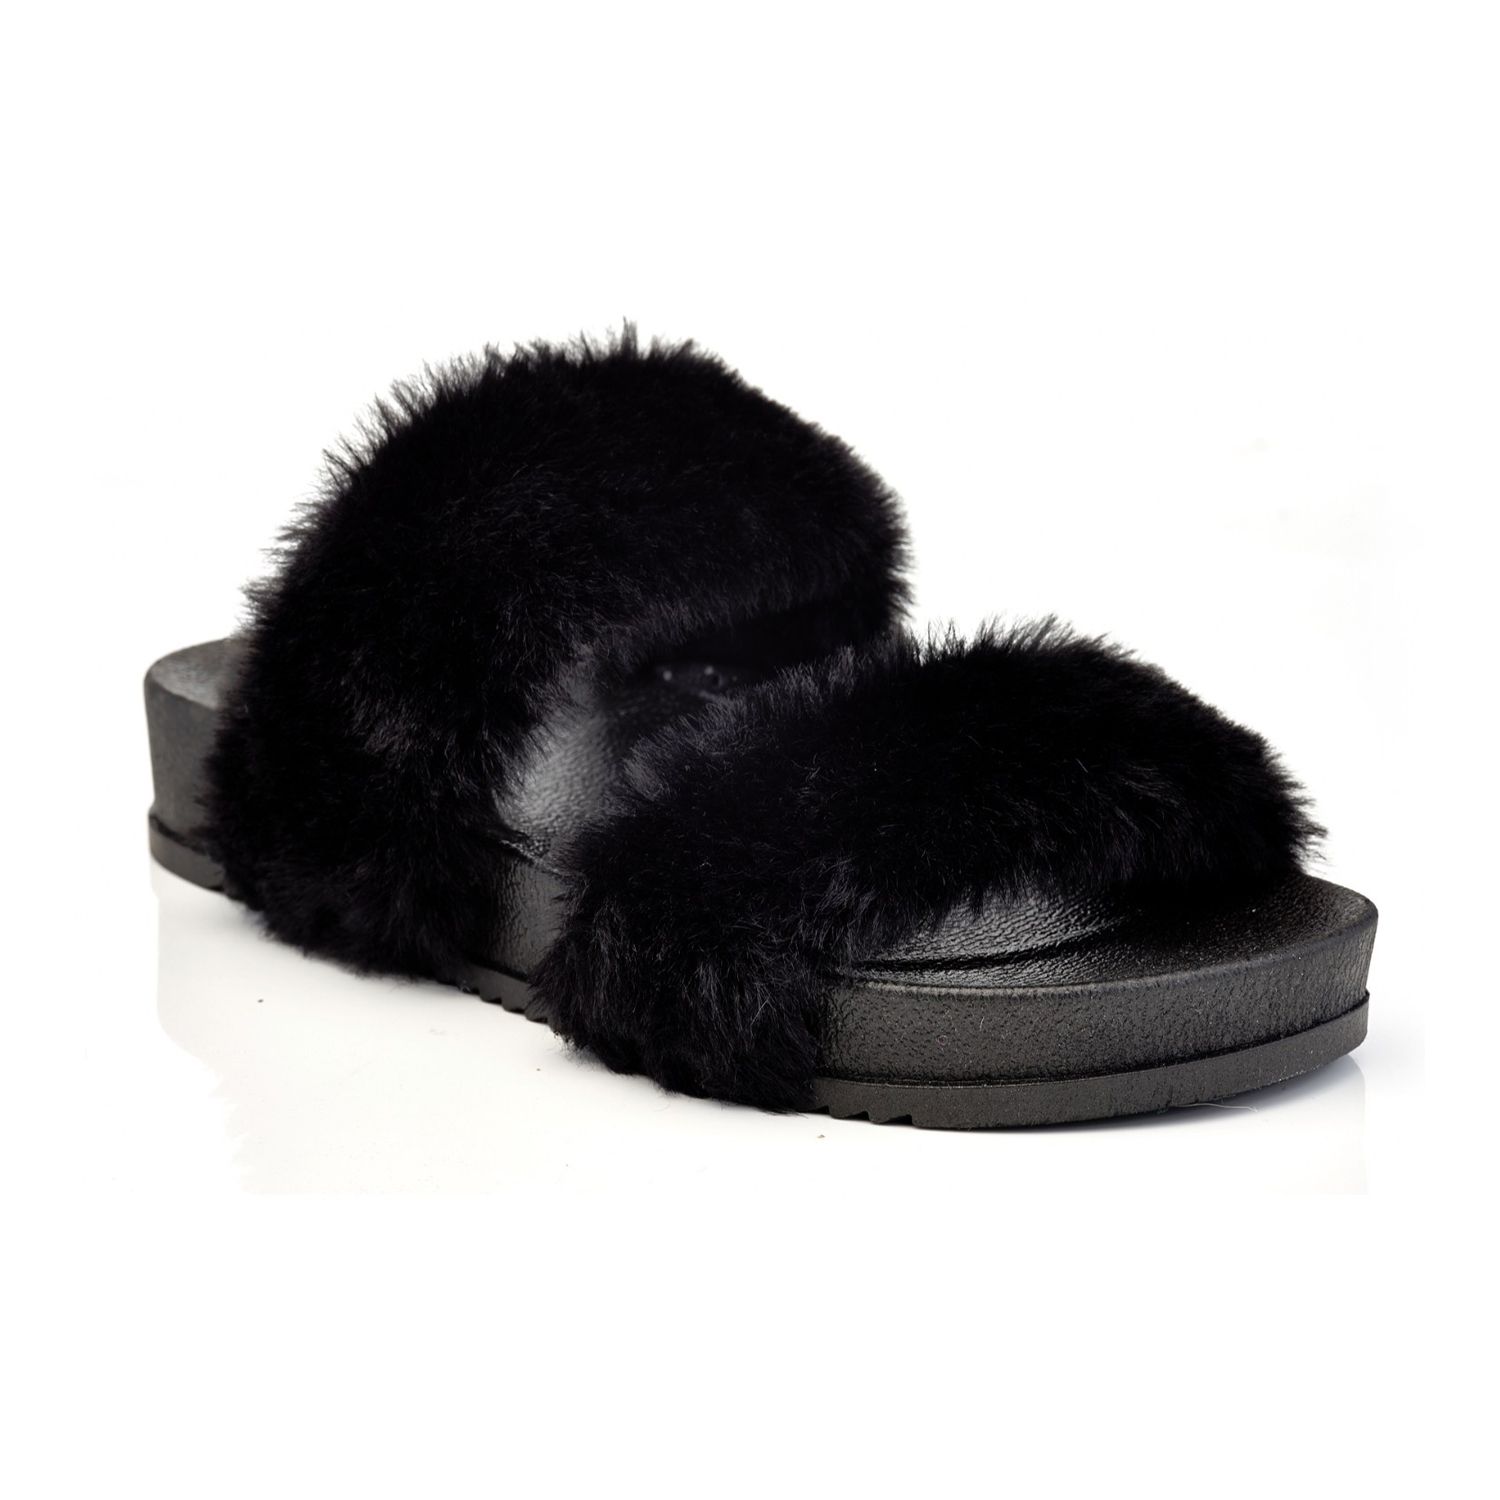 Image for Henry Ferrera Dreamer Women's Faux-Fur Slide Sandals at Kohl's.